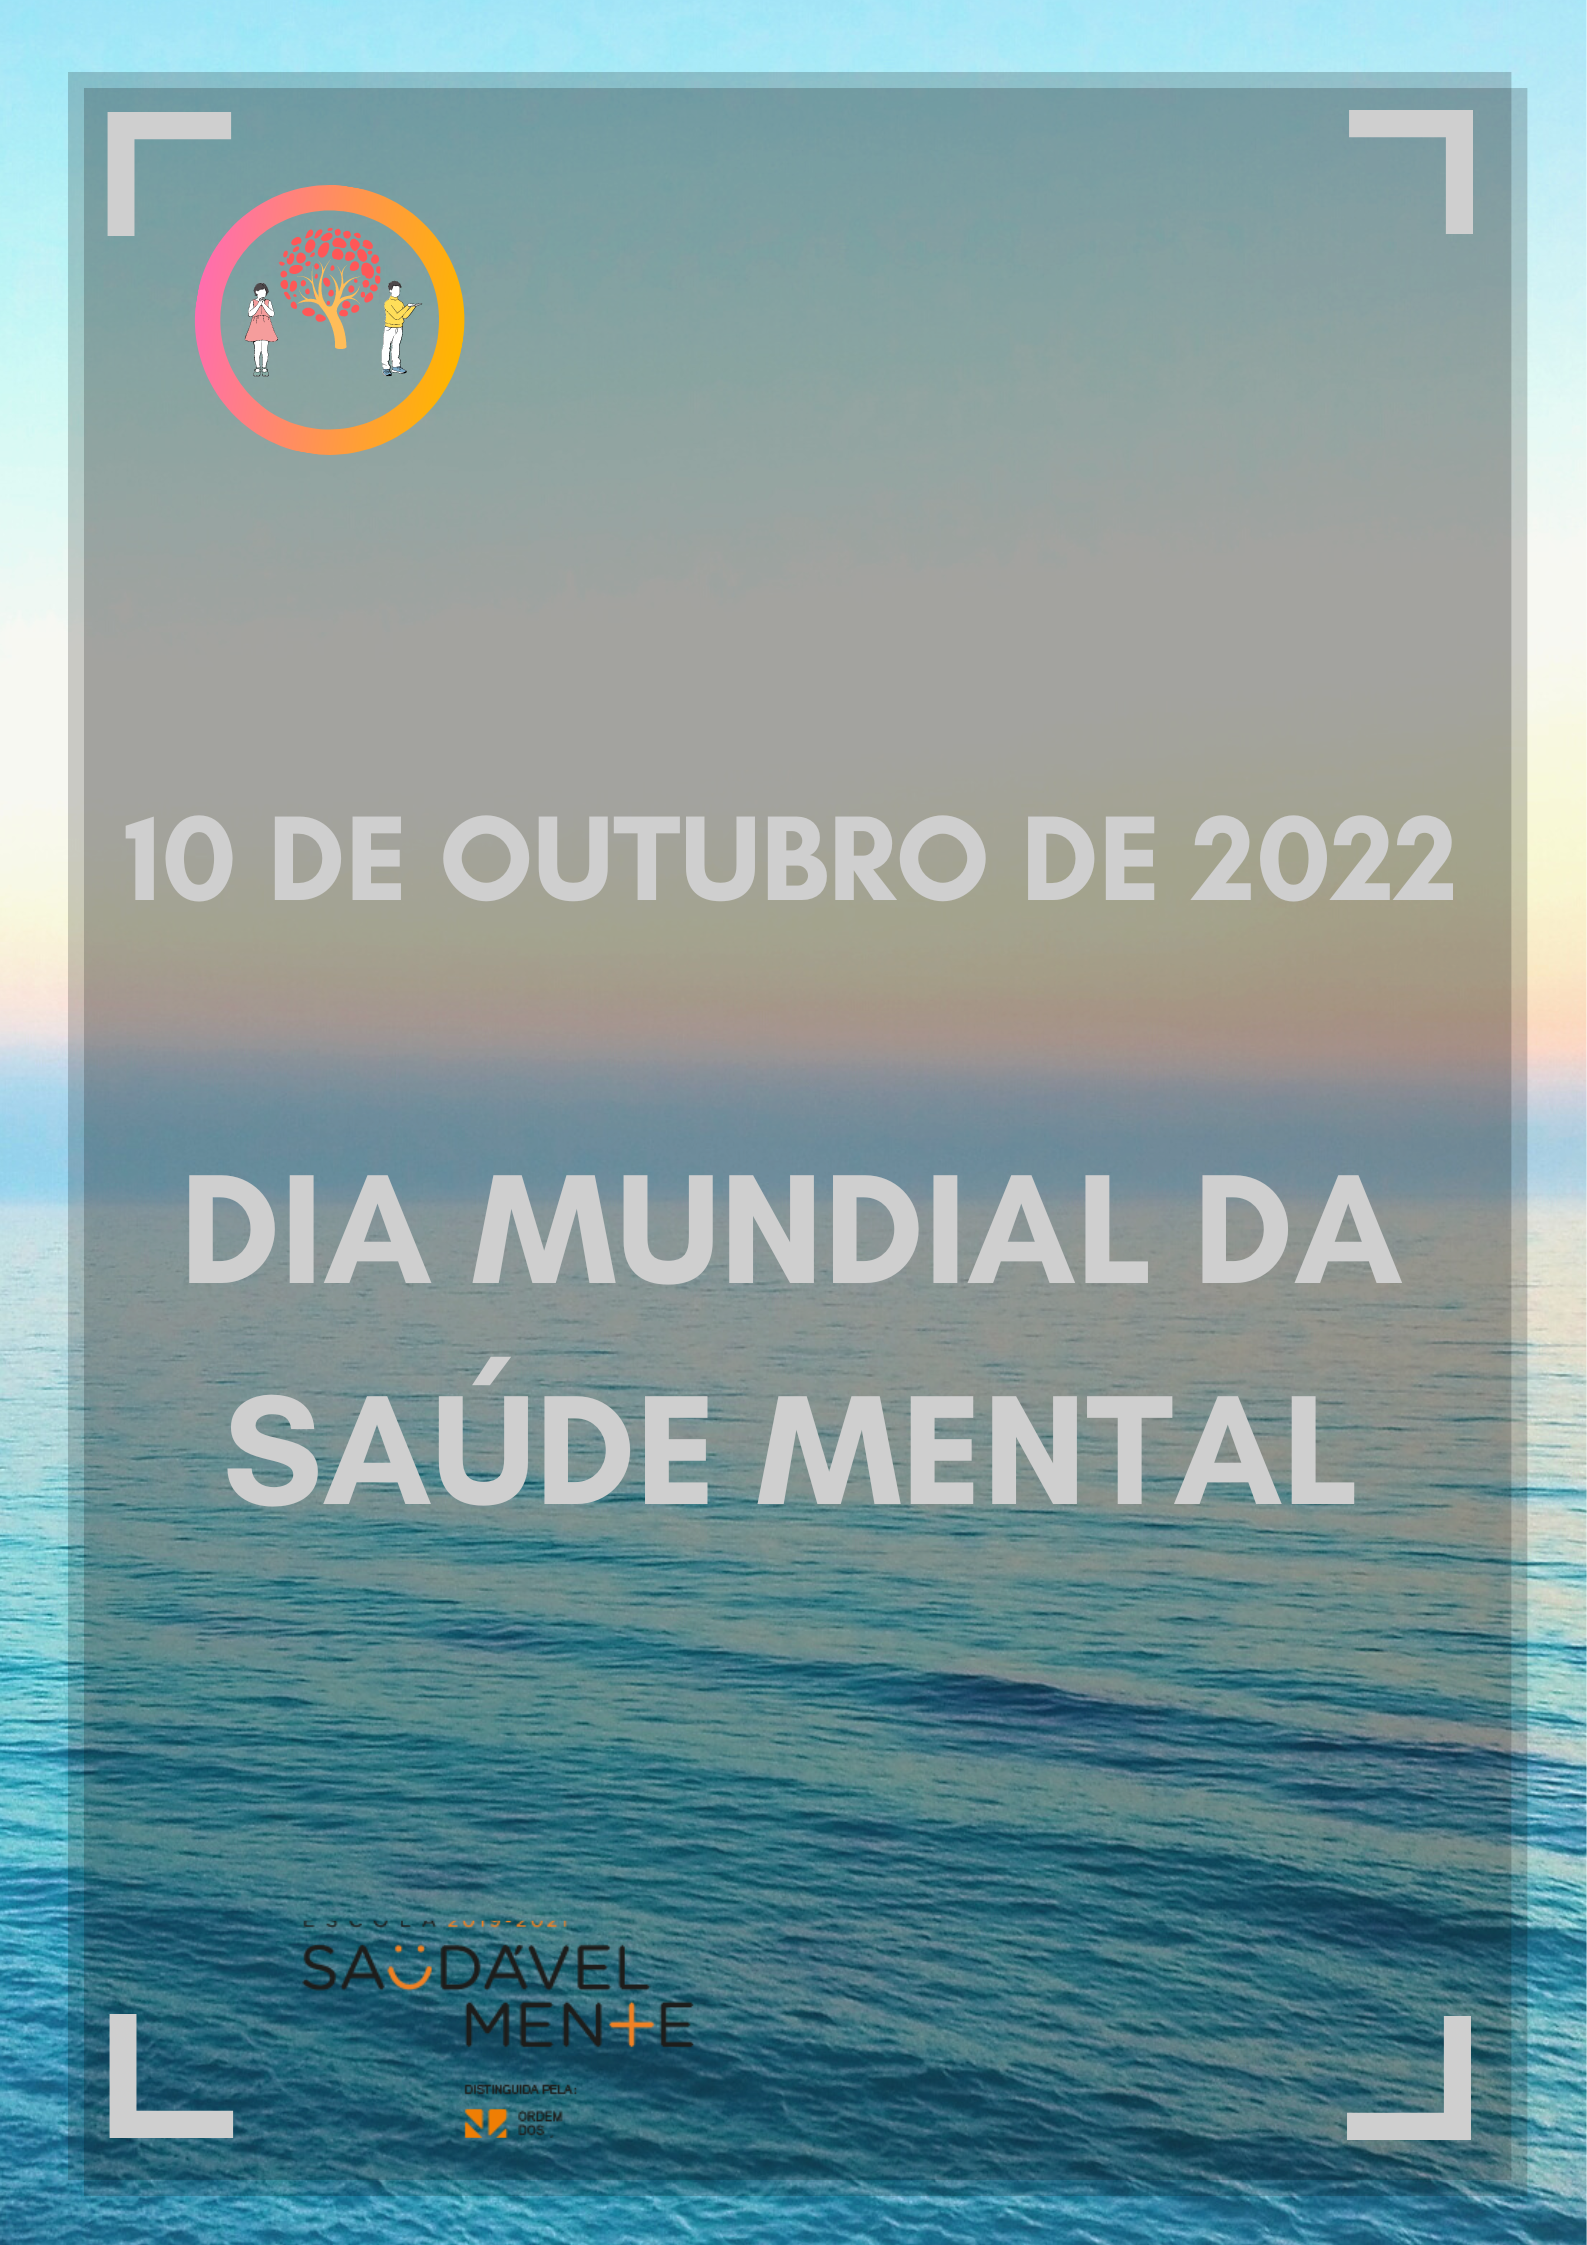 10 outubro de 2022 dia mundial saude mental